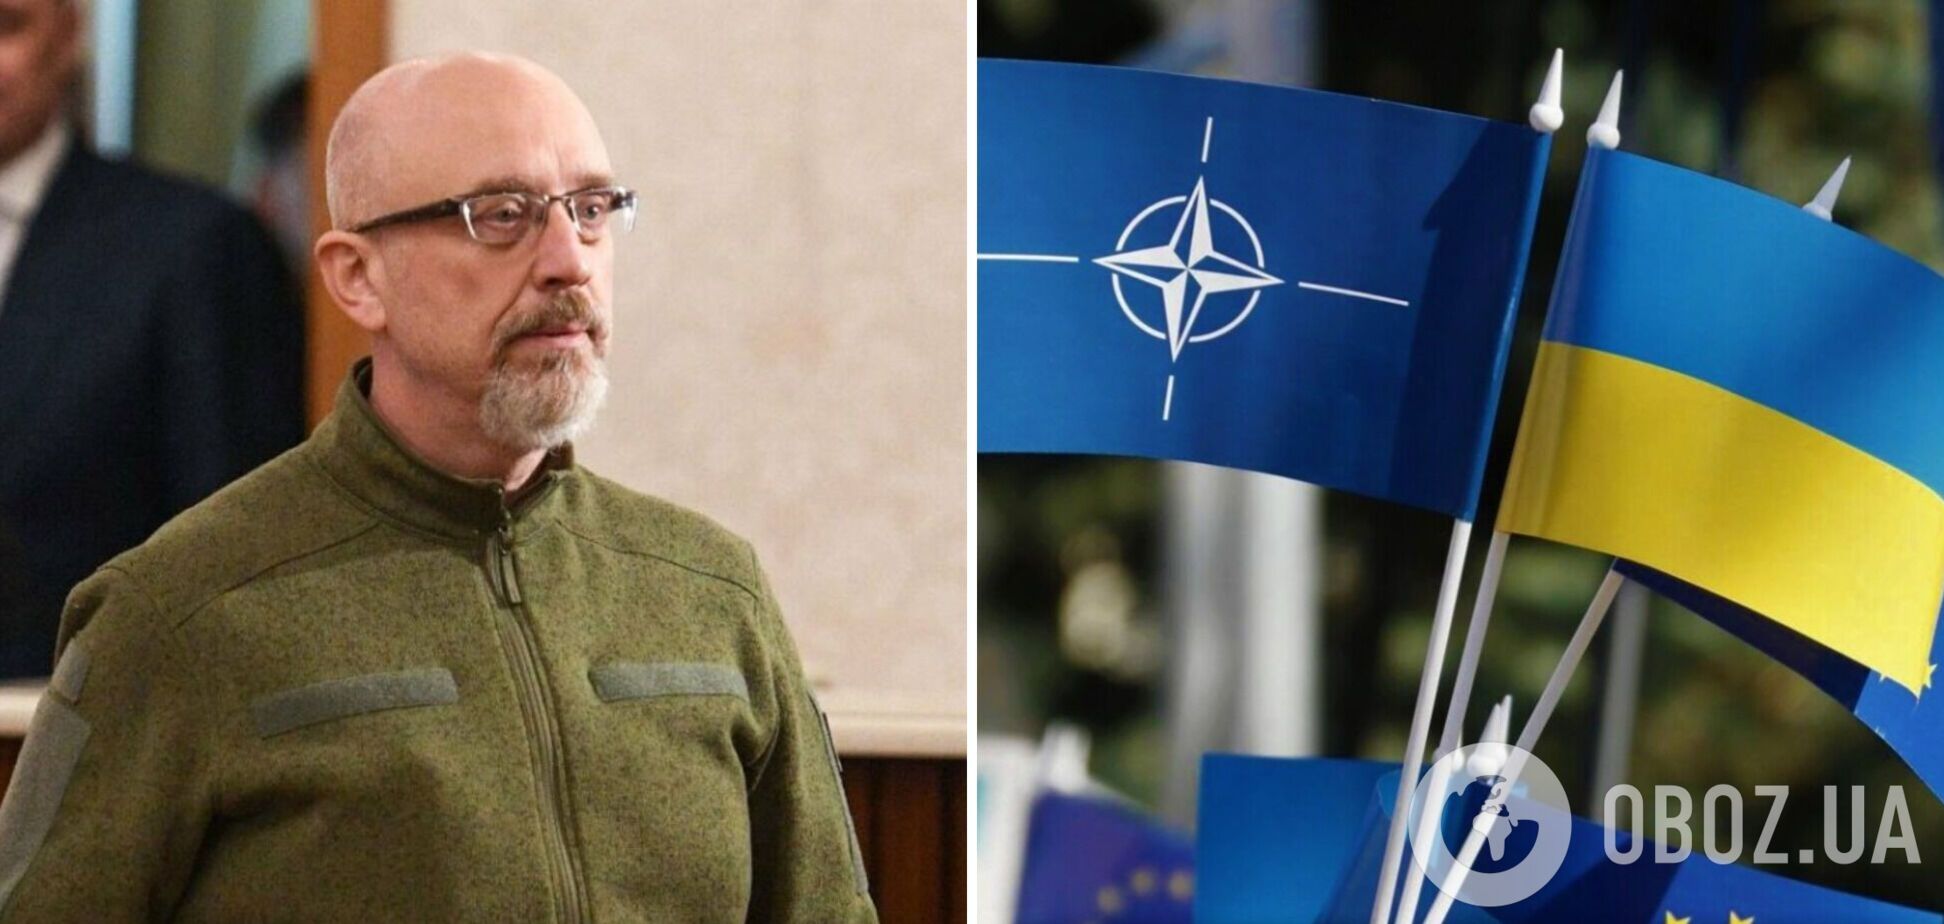 Оборонні закупівлі в Україні переводять на стандарти НАТО